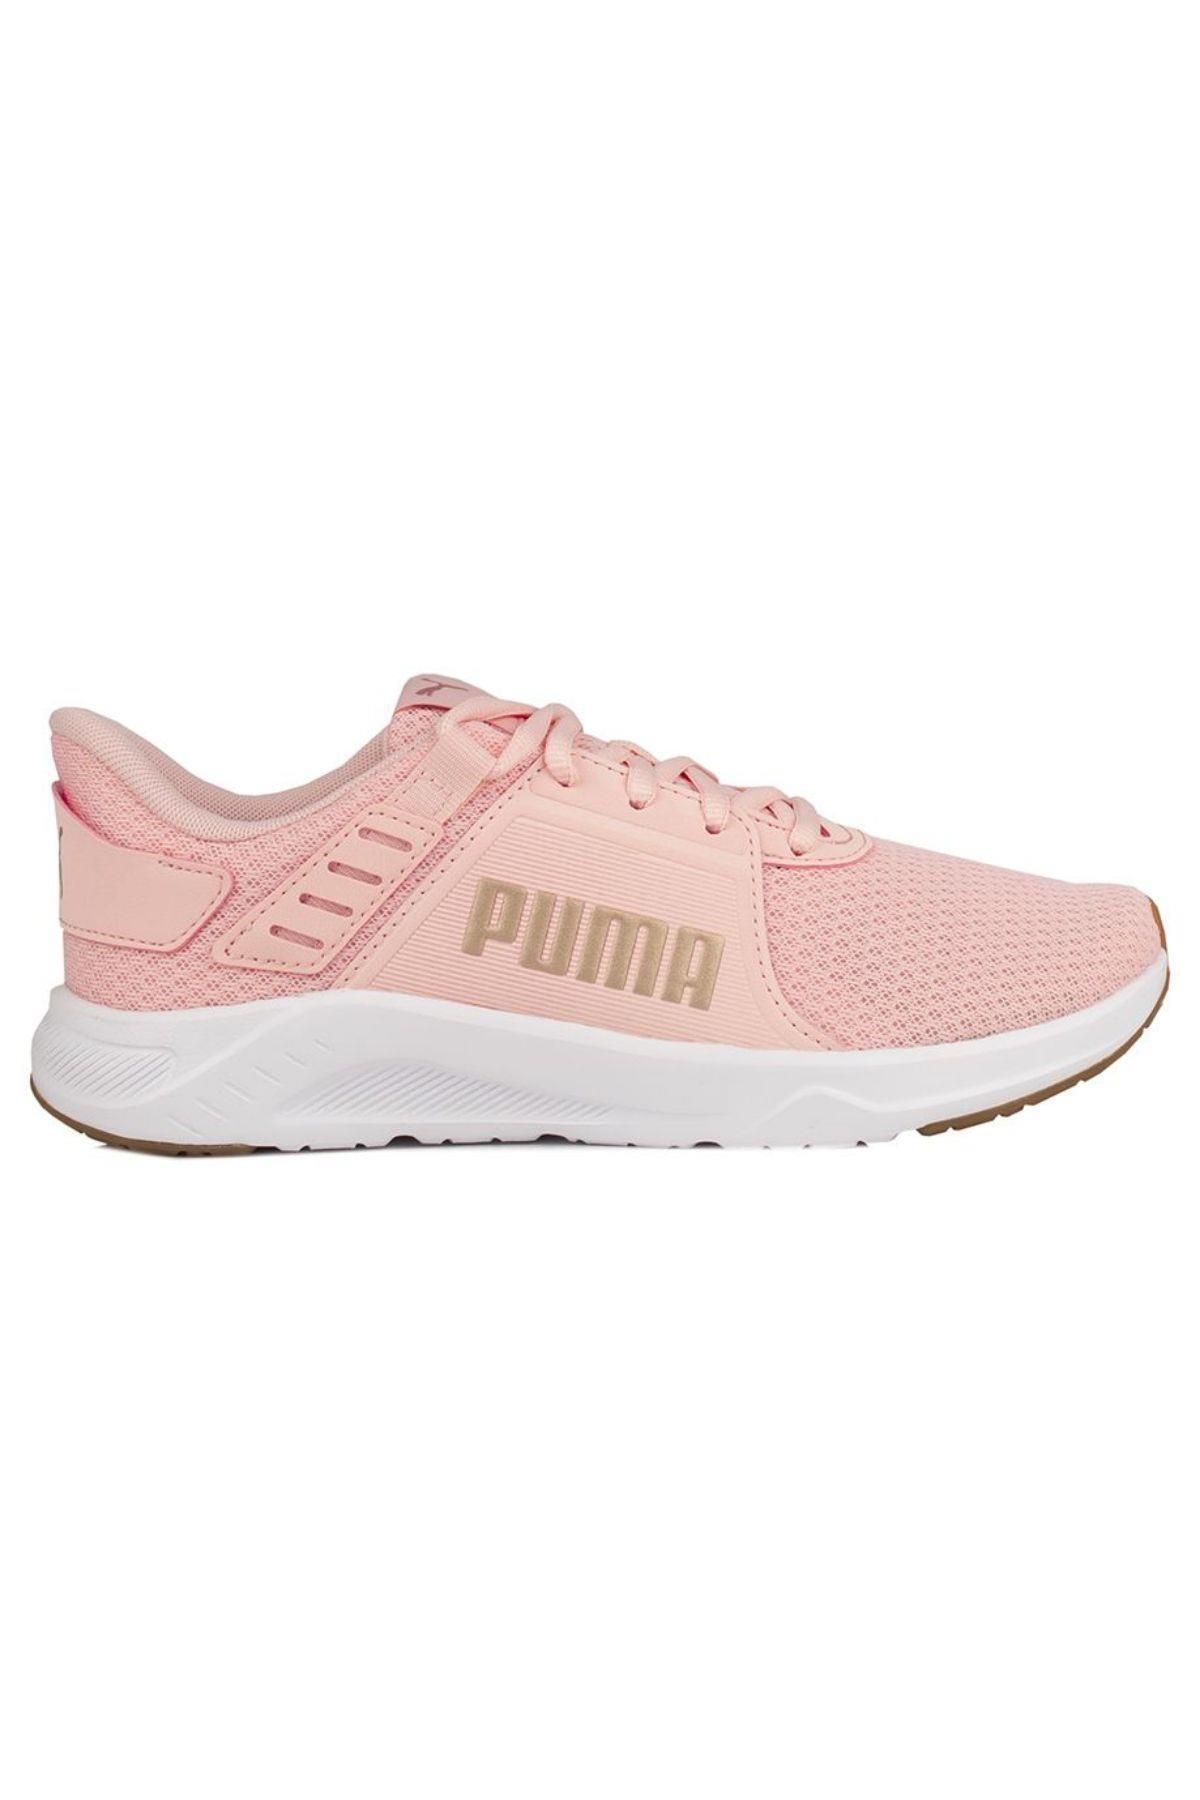 Puma Kadın Rose Gold Günlük Yürüyüş Spor Ayakkabı Vo37772905